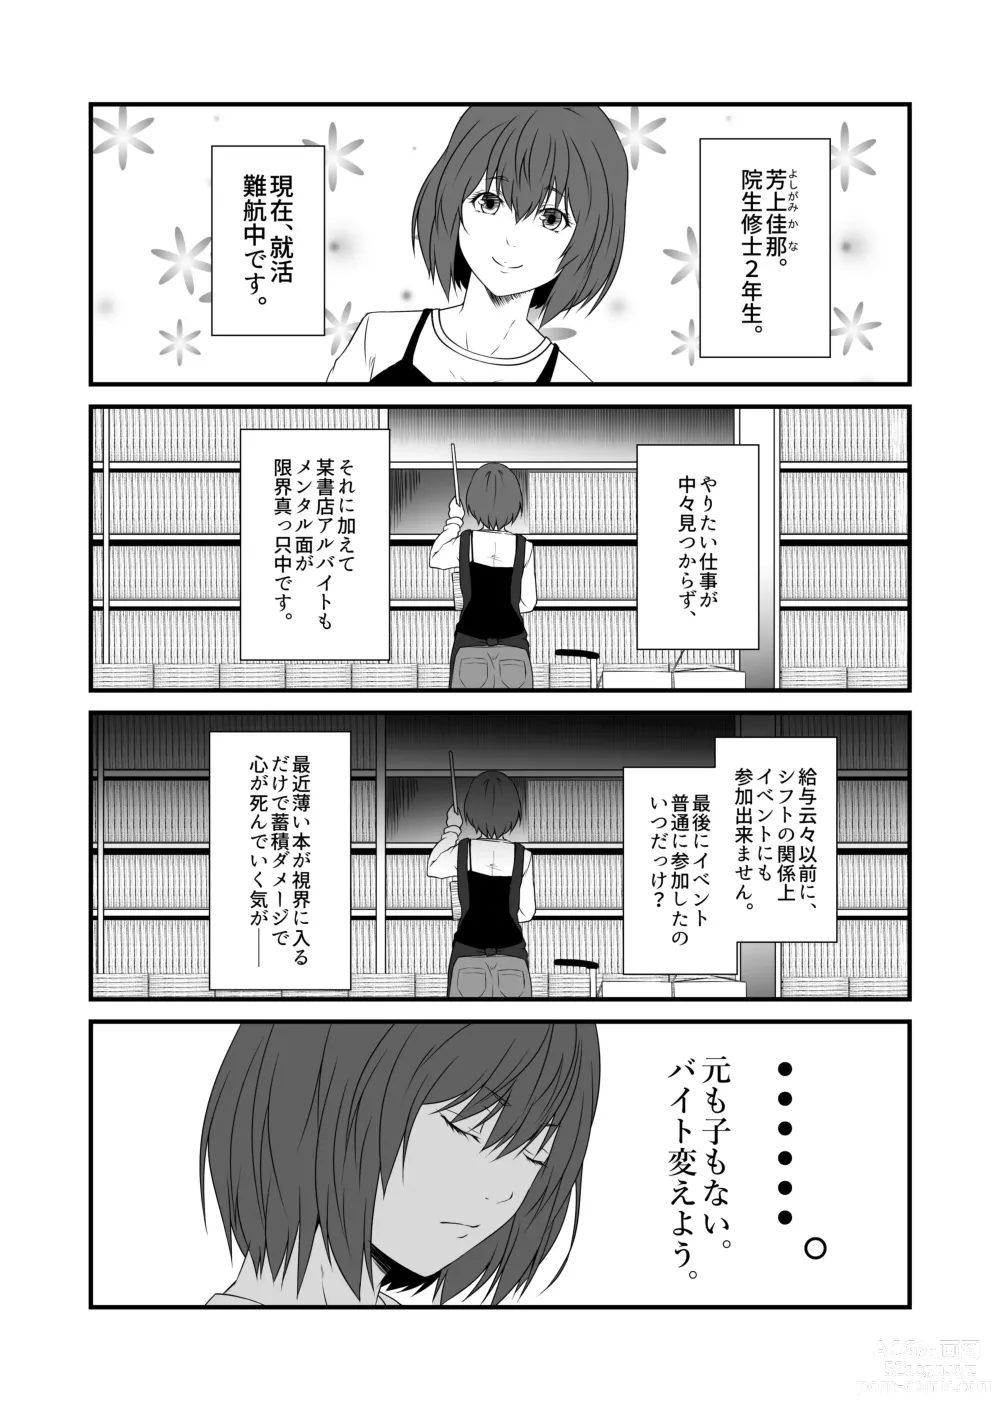 Page 4 of doujinshi Kohaku Biyori Vol. 9